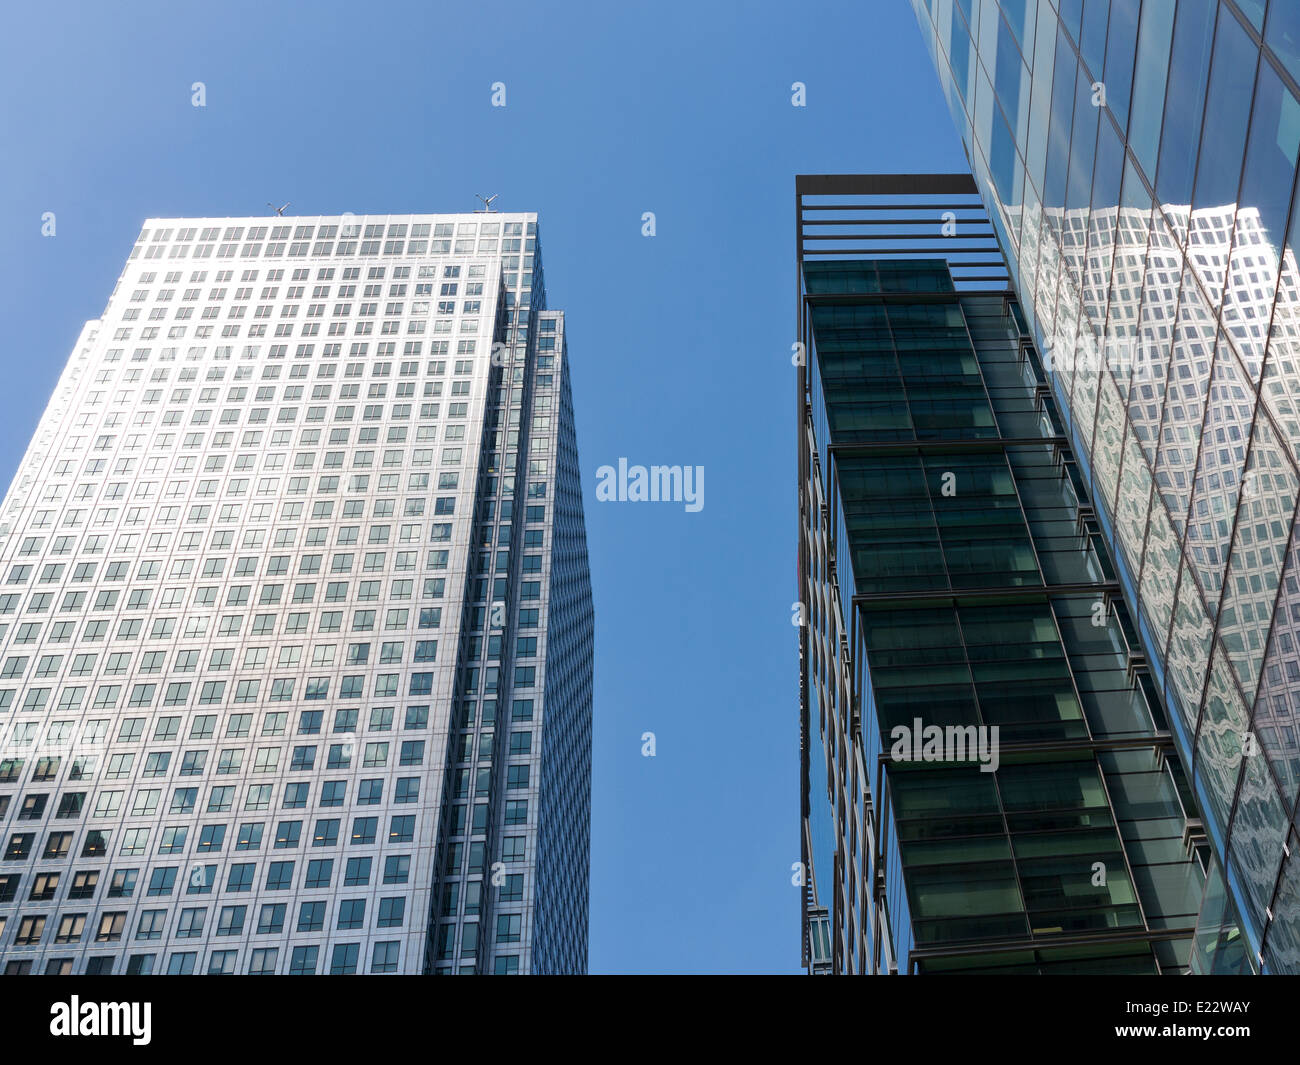 Blickte zu modernen Glas und Stahl stark reflektierende kommerzielle Wolkenkratzer gegen ein strahlend blauer Himmel mit Wolken Licht wight Stockfoto